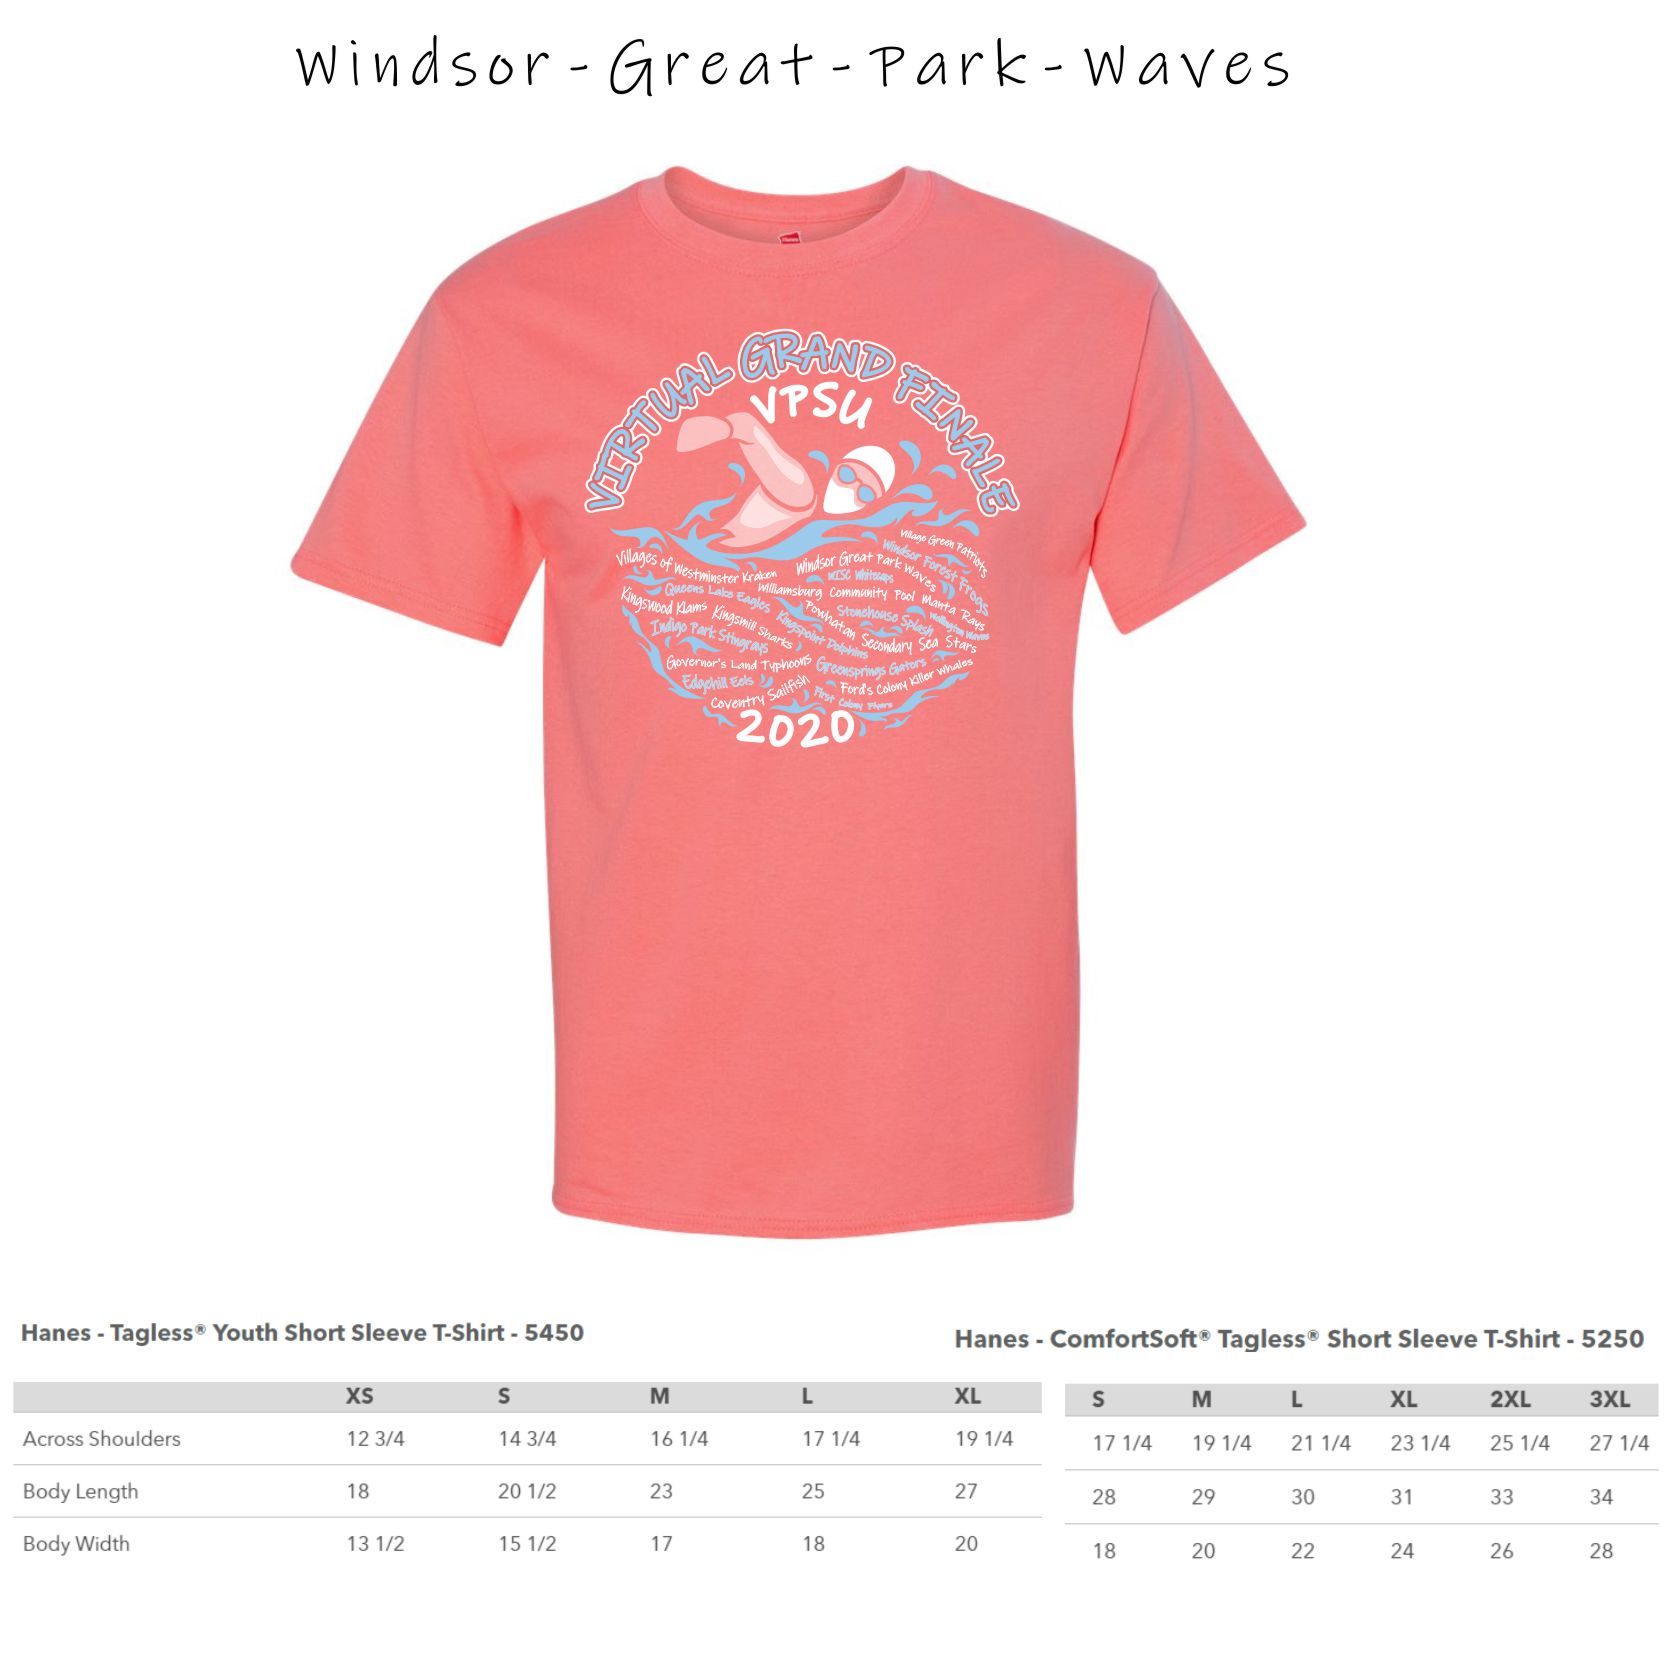 1 - Windsor Great Park Waves